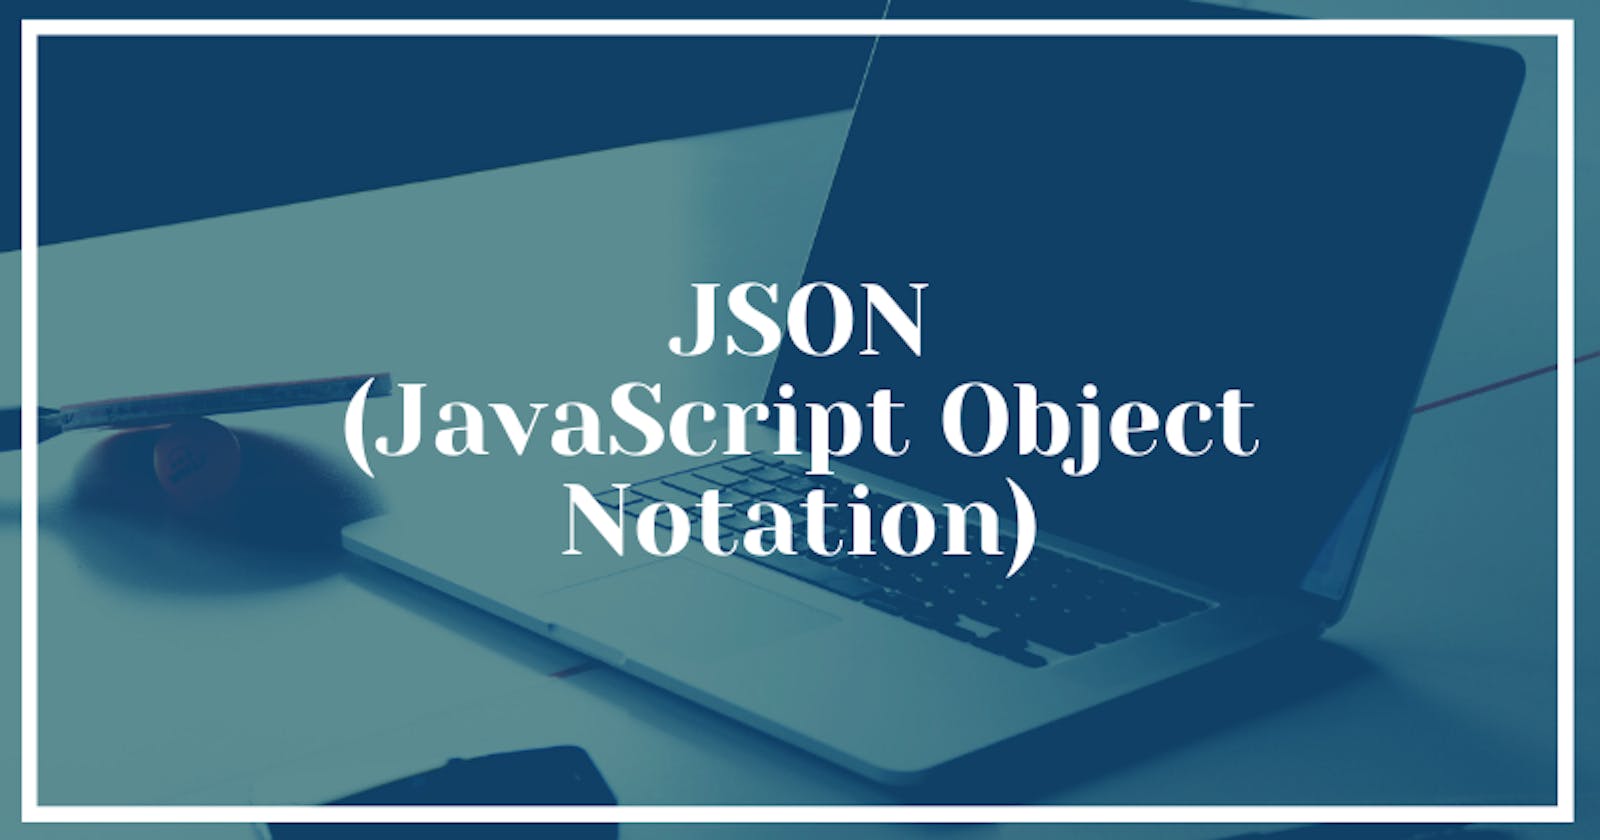 JSON(JavaScript Object Notation)